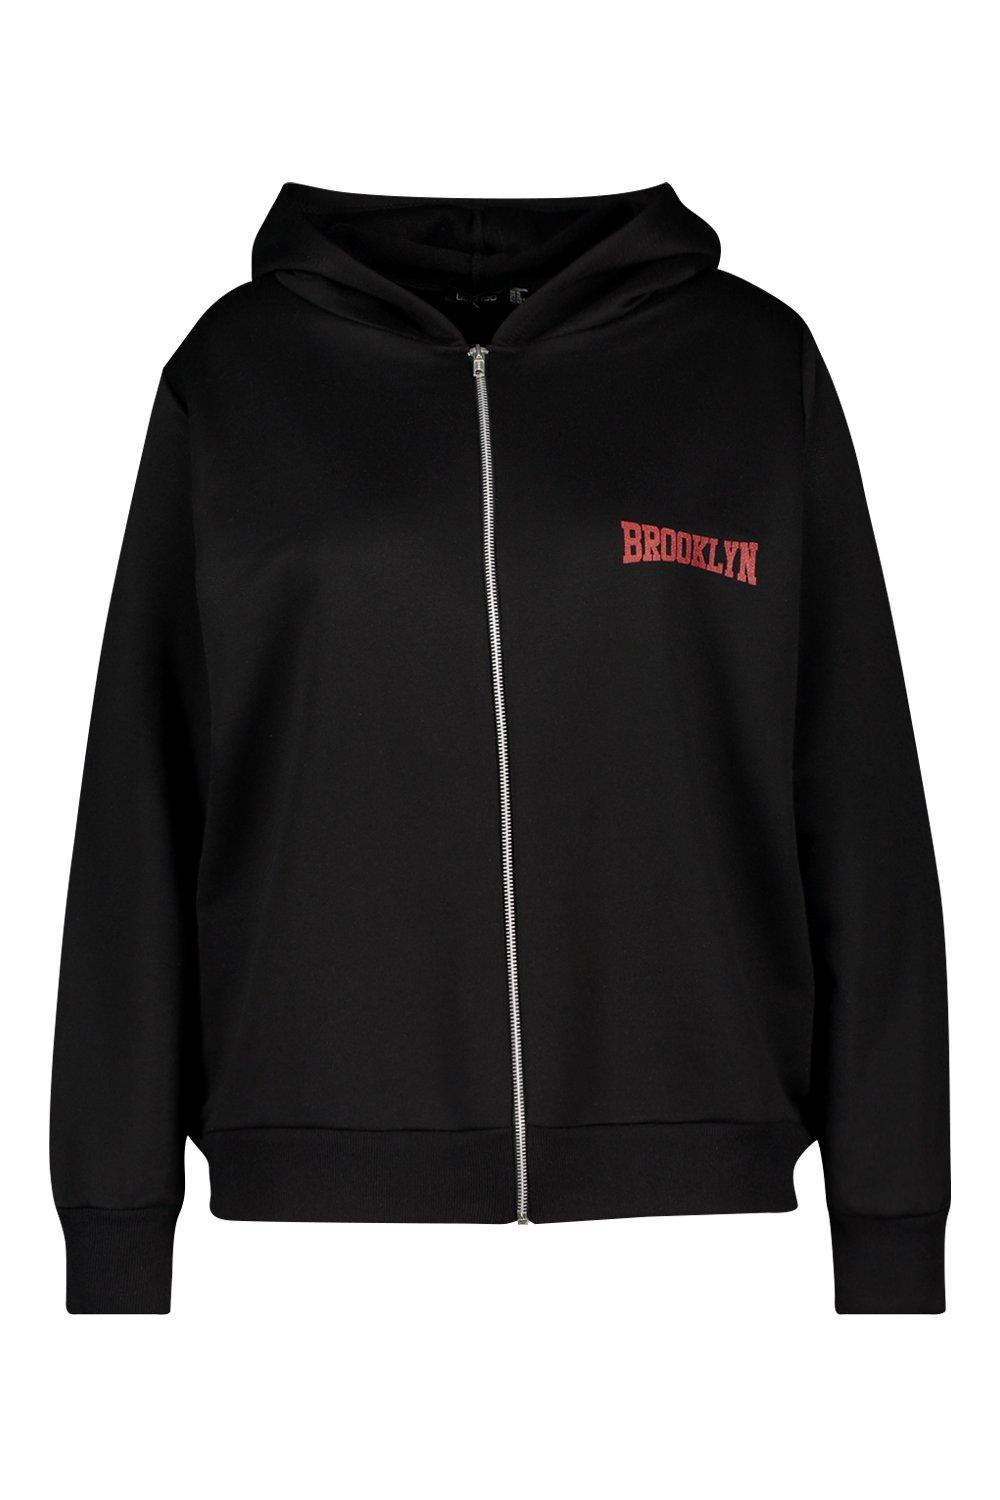 brooklyn zip up hoodie